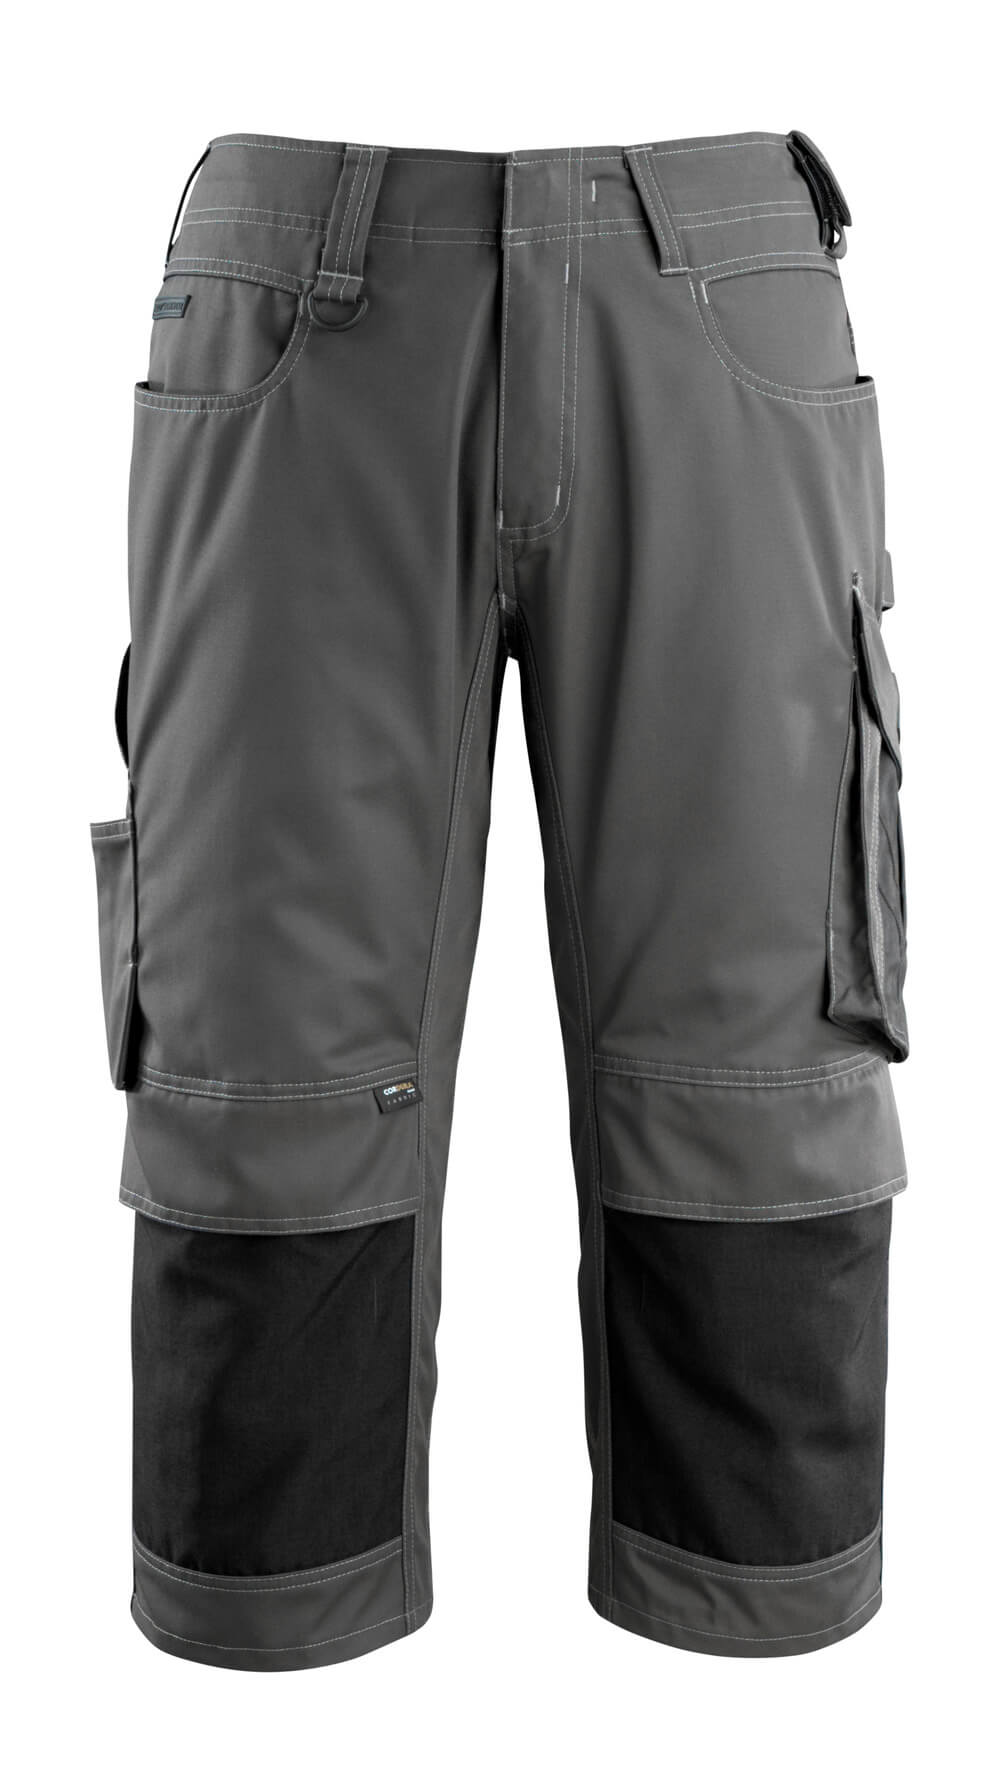 14149-442-1809 Driekwart broek met kniezakken - donkerantraciet/zwart